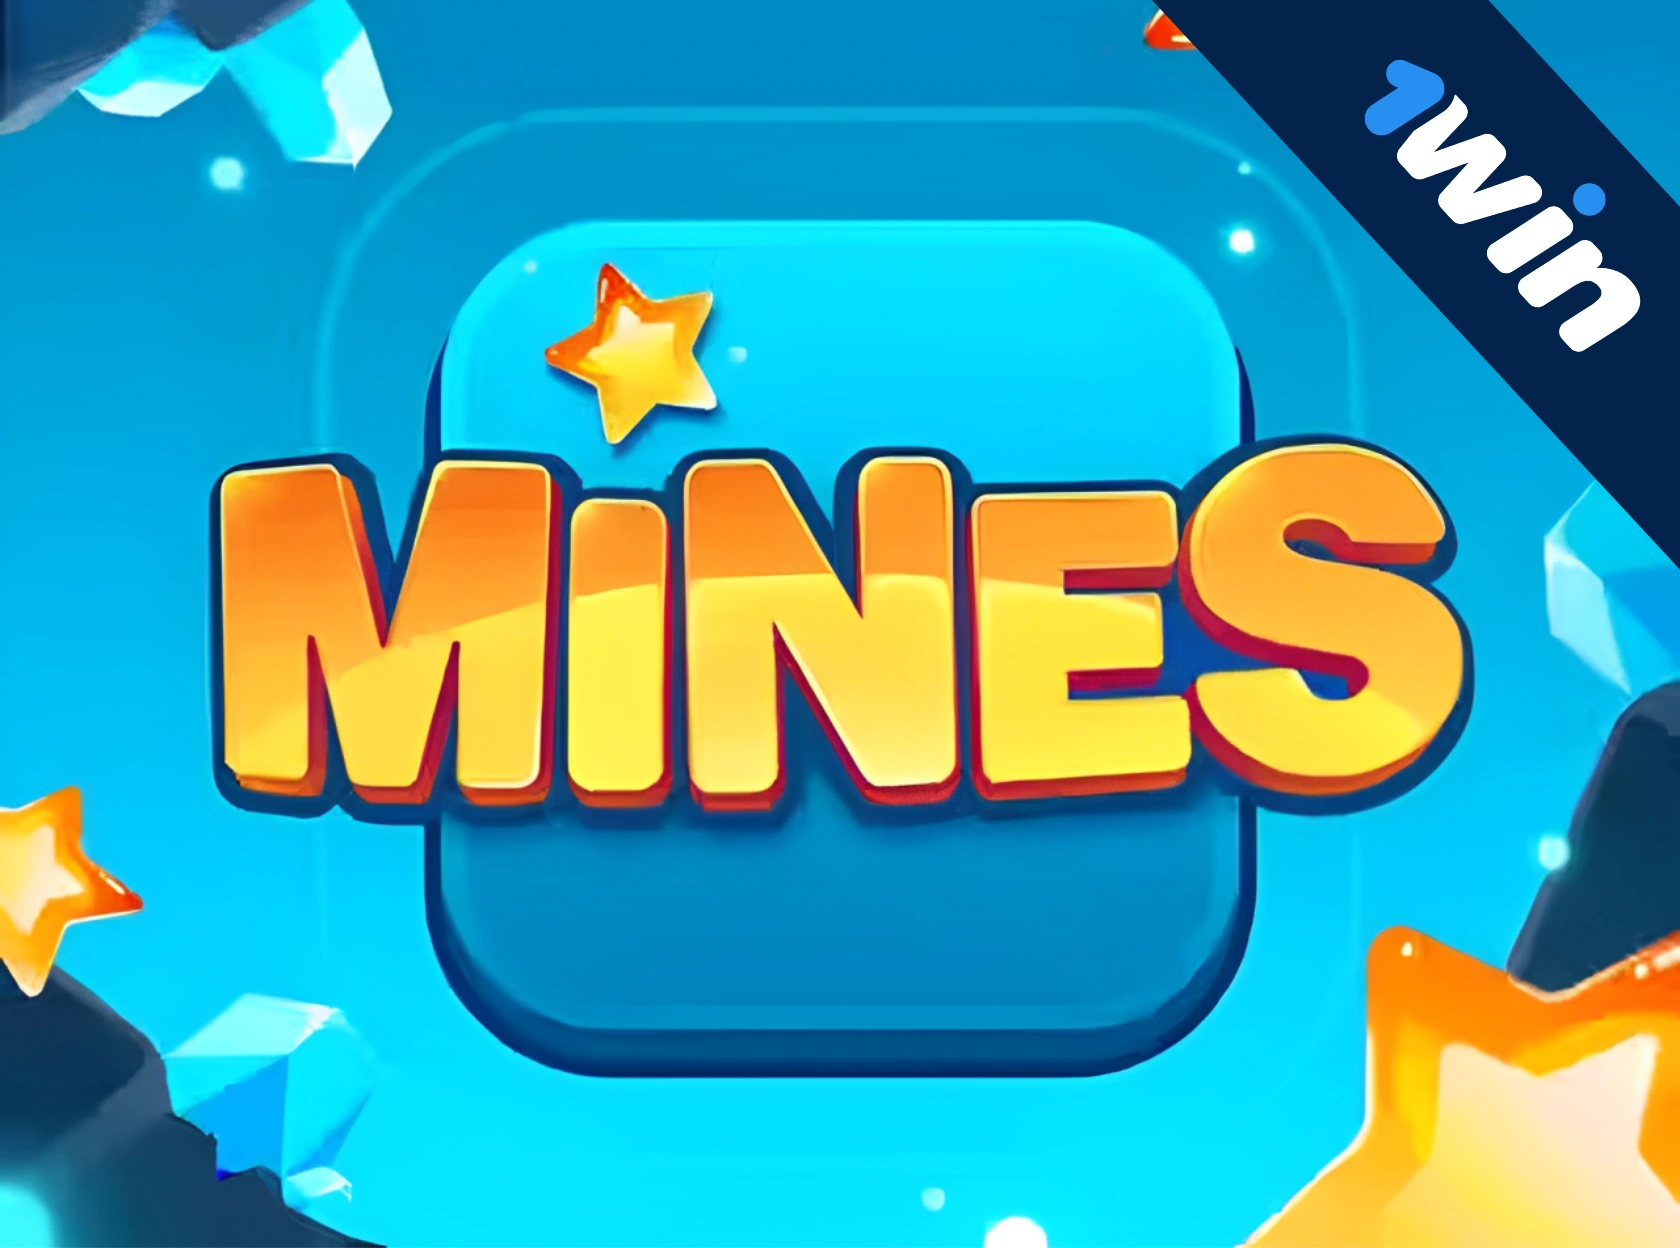 1win Mines - pul üçün oyun onlayn oynamaq